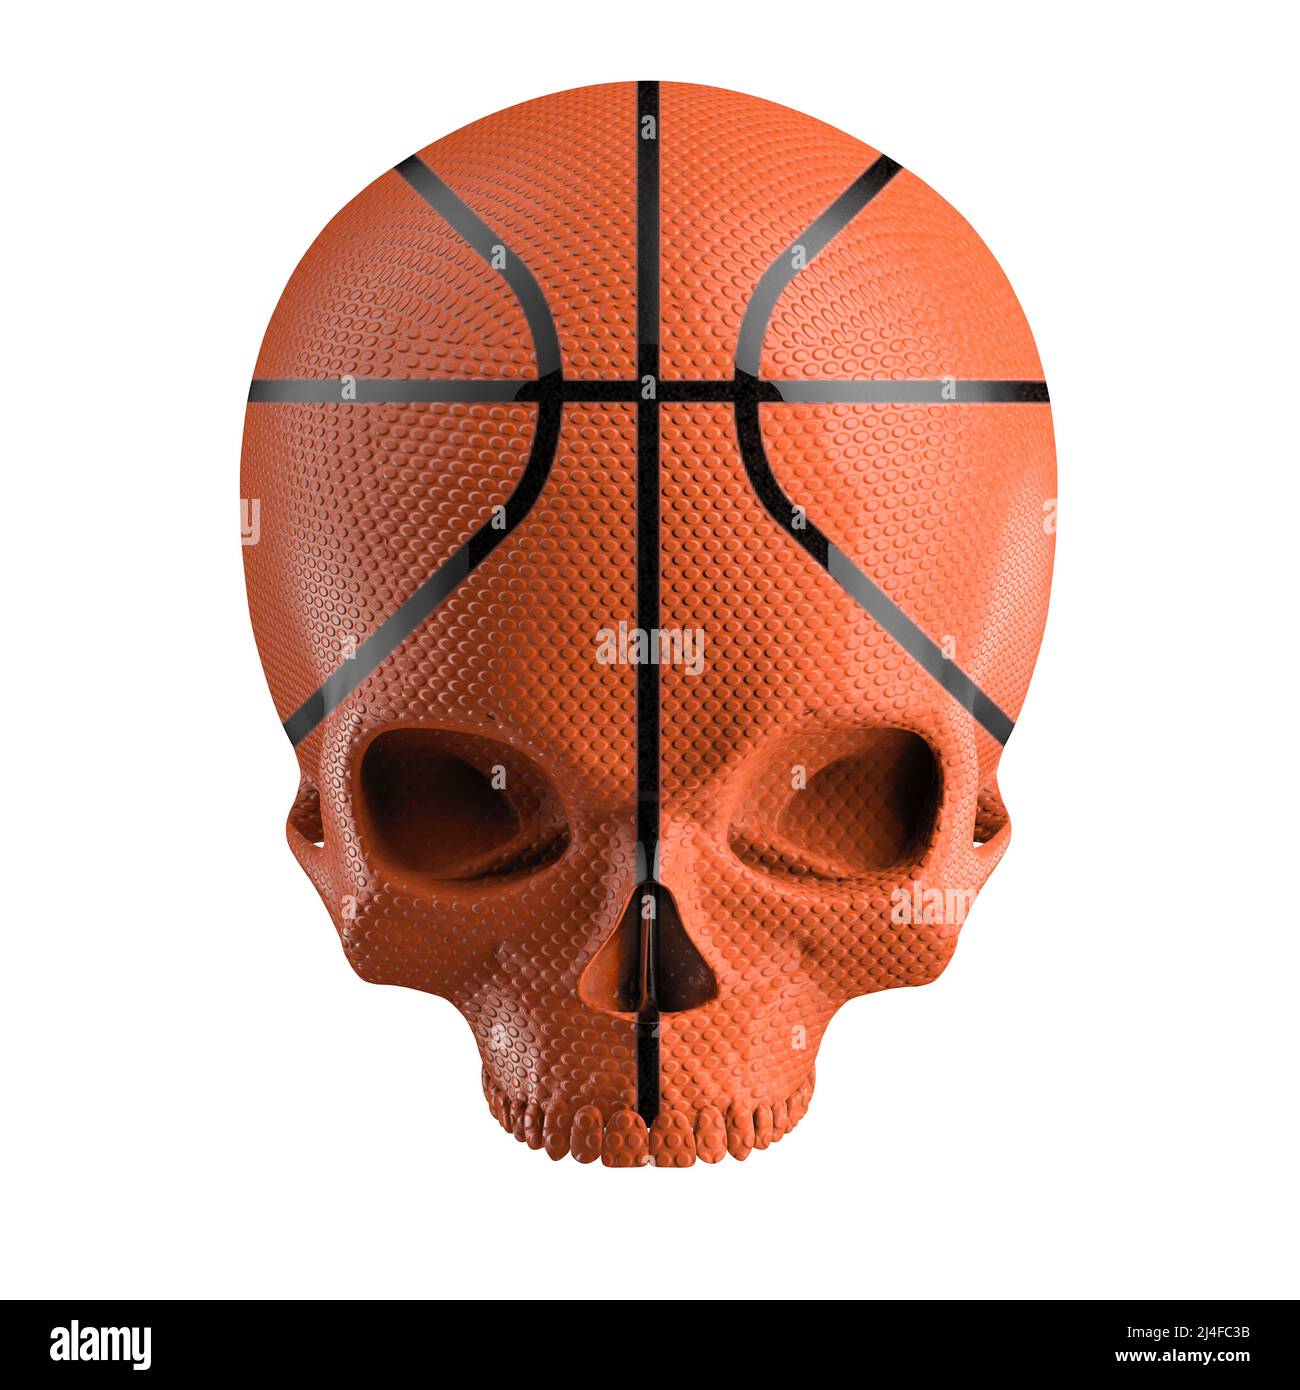 Basketball Schädel - 3D Illustration von orangenen Basketball geformten menschlichen Schädel isoliert auf weißem Studio-Hintergrund Stockfoto